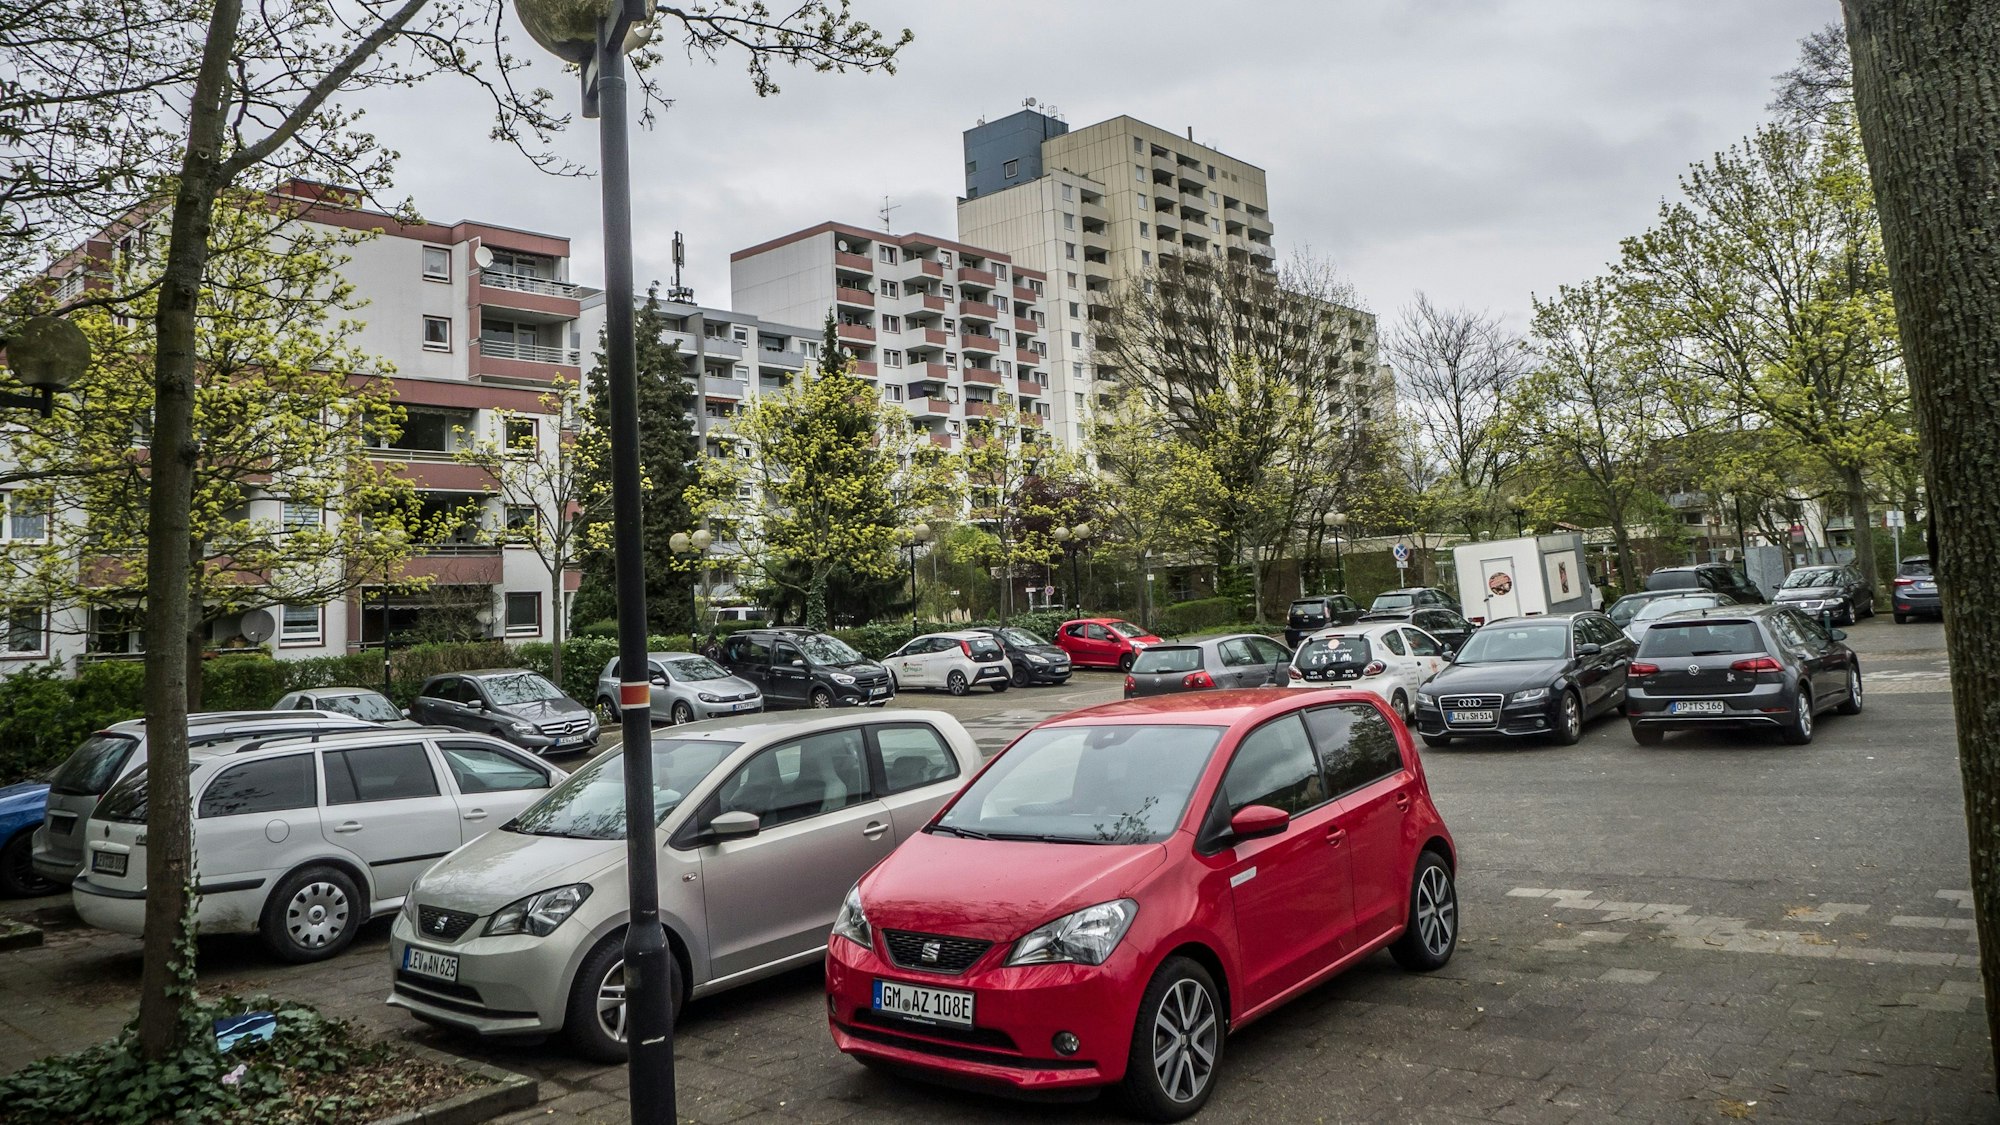 Am Ende einer umfangreichen Such- und Auswahlprozedur sind zwei Manforter Parkplätze herausgekommen, die die Stadt zum Teil entsiegeln kann. Der Kirmesplatz an der Scharnhorststraße ist einer der beiden.